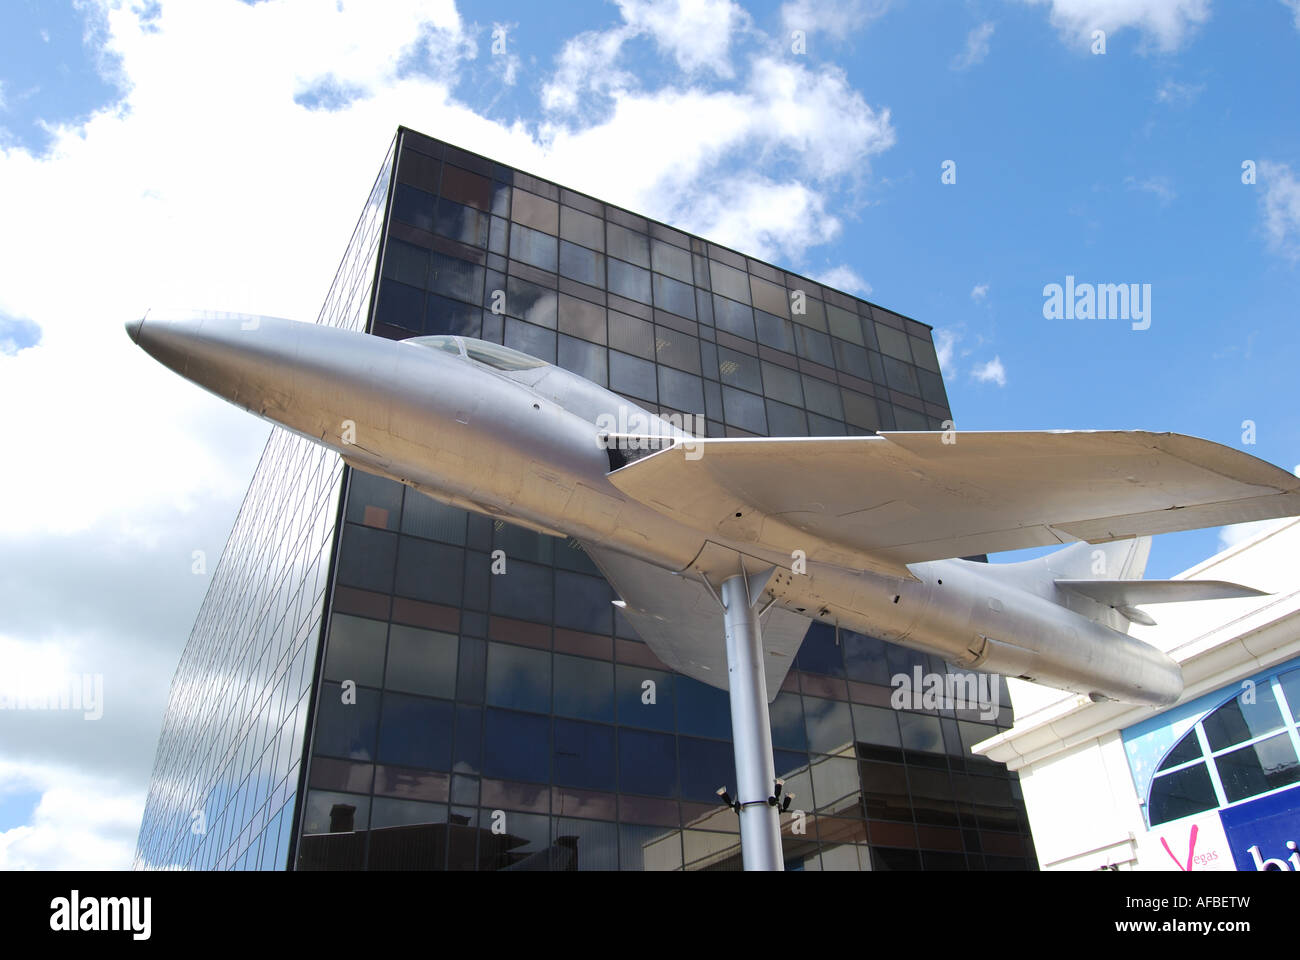 Hawker Hunter réplique avion, centre ville, Woking, Surrey, Angleterre, Royaume-Uni Banque D'Images